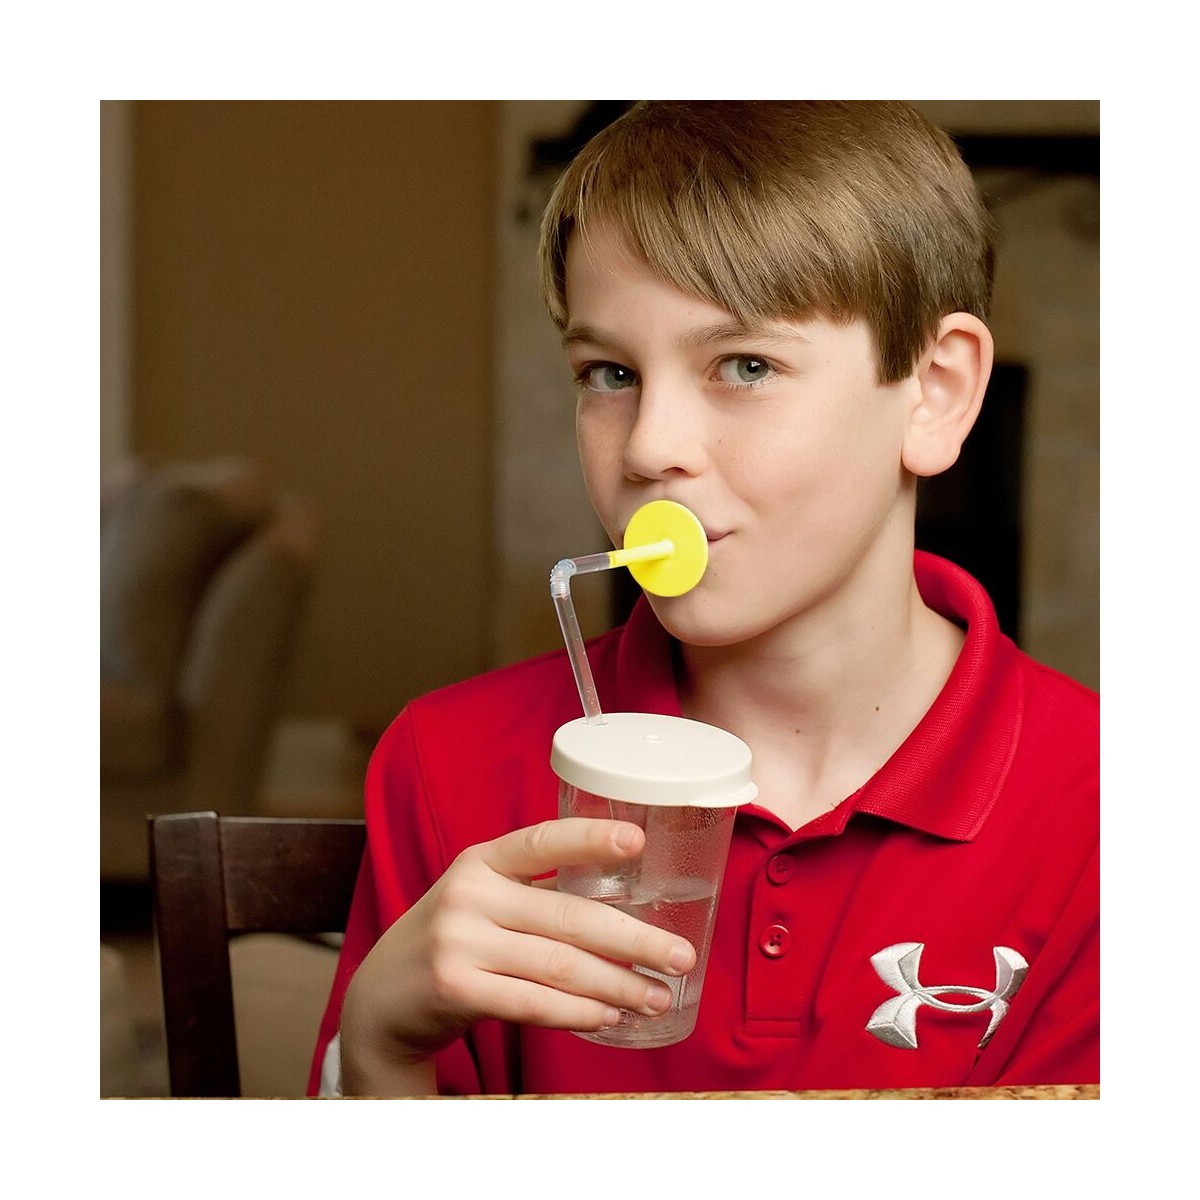 Teenager trinkt aus dem Sip-Tip Trinkbecher mit gelben Lipblock